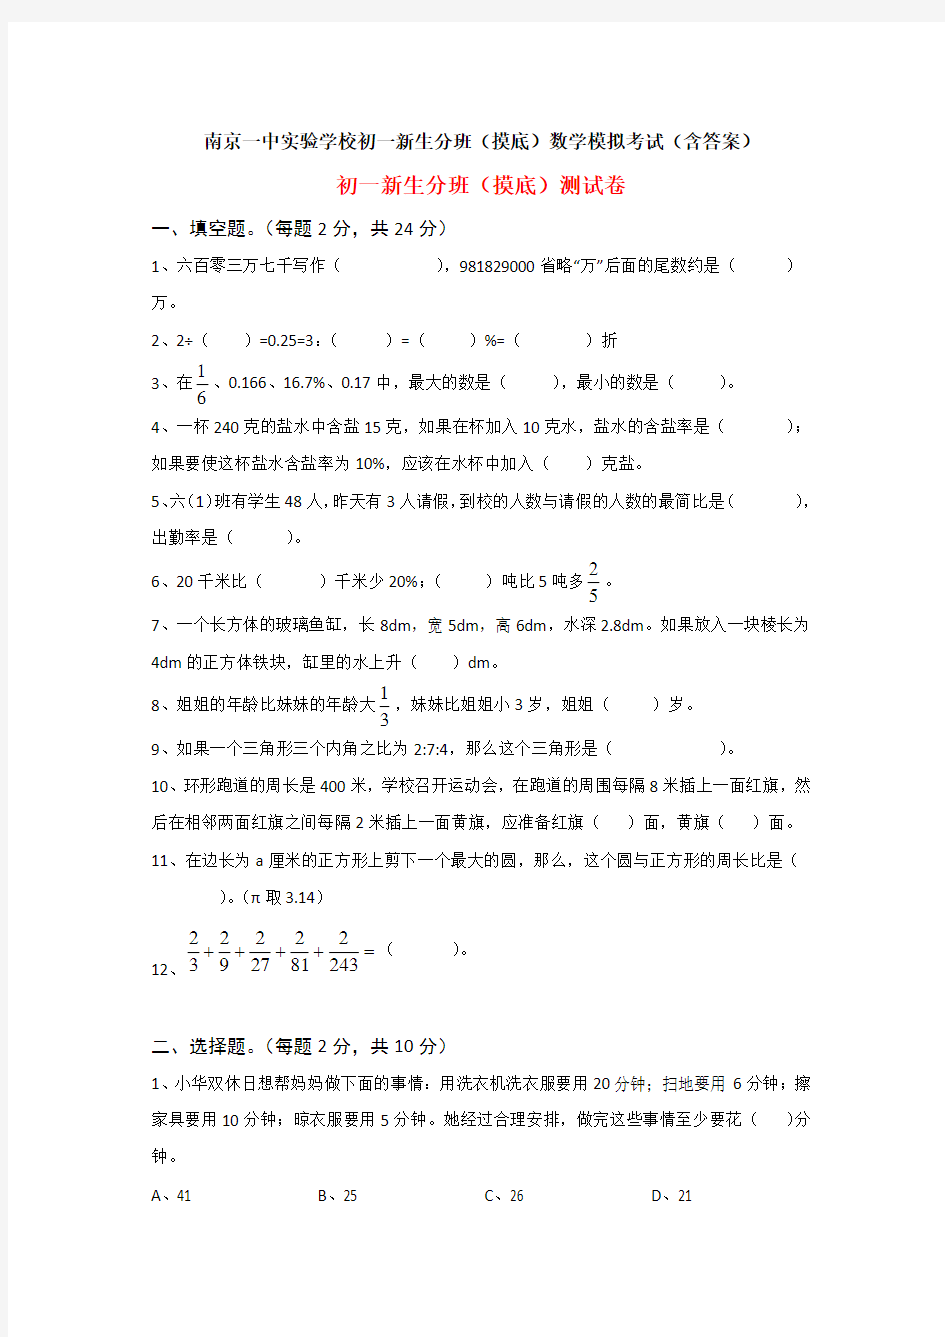 南京一中实验学校初一新生分班(摸底)数学模拟考试(含答案)